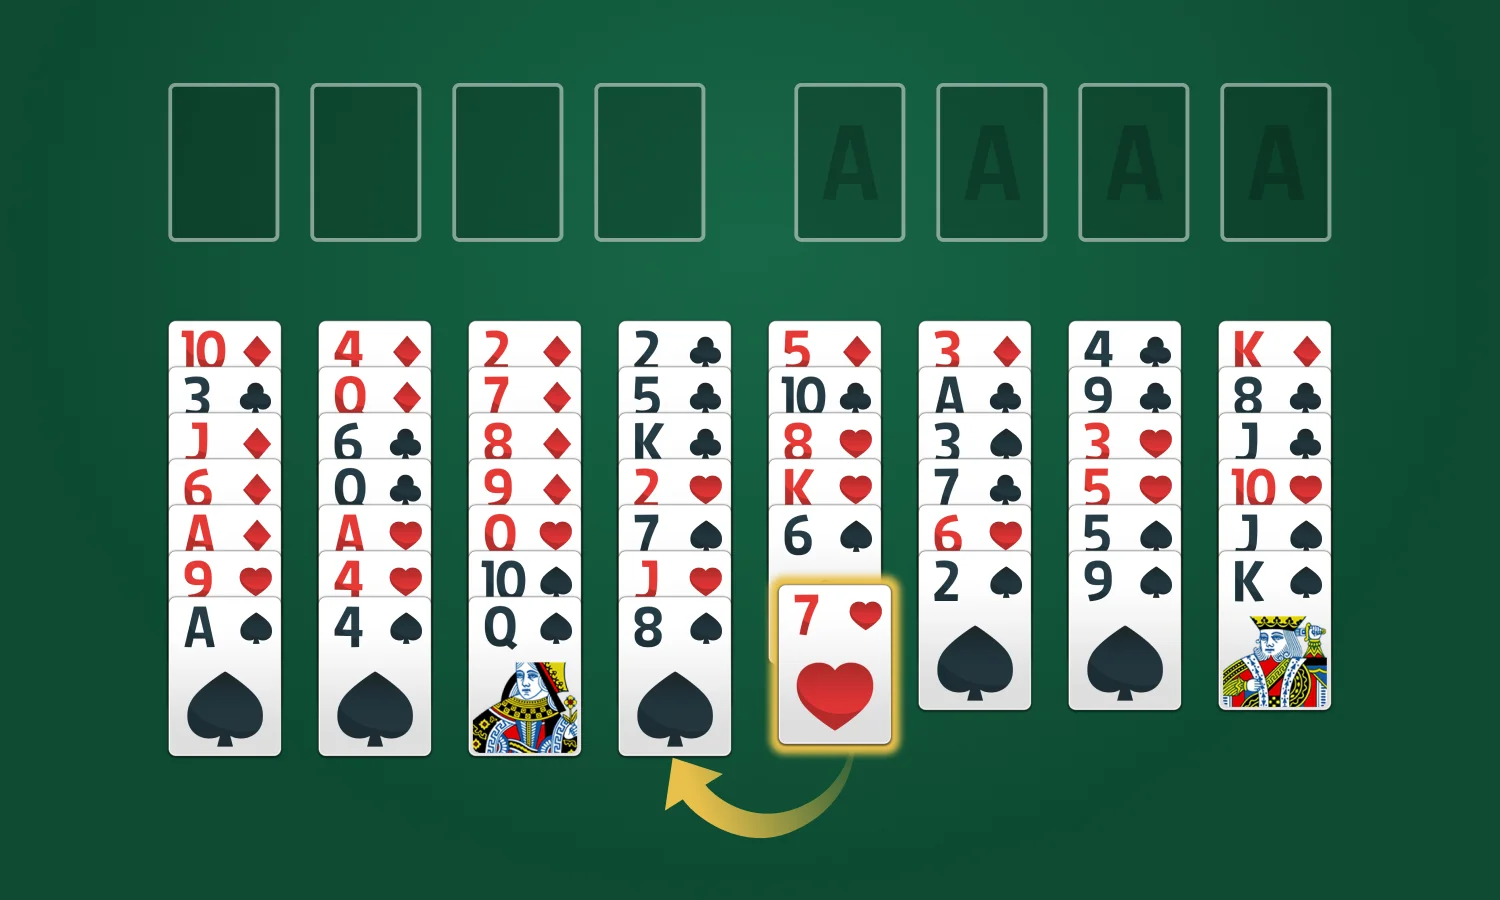 Règles du jeu Solitaire FreeCell: Déplacer les cartes dans le tableau